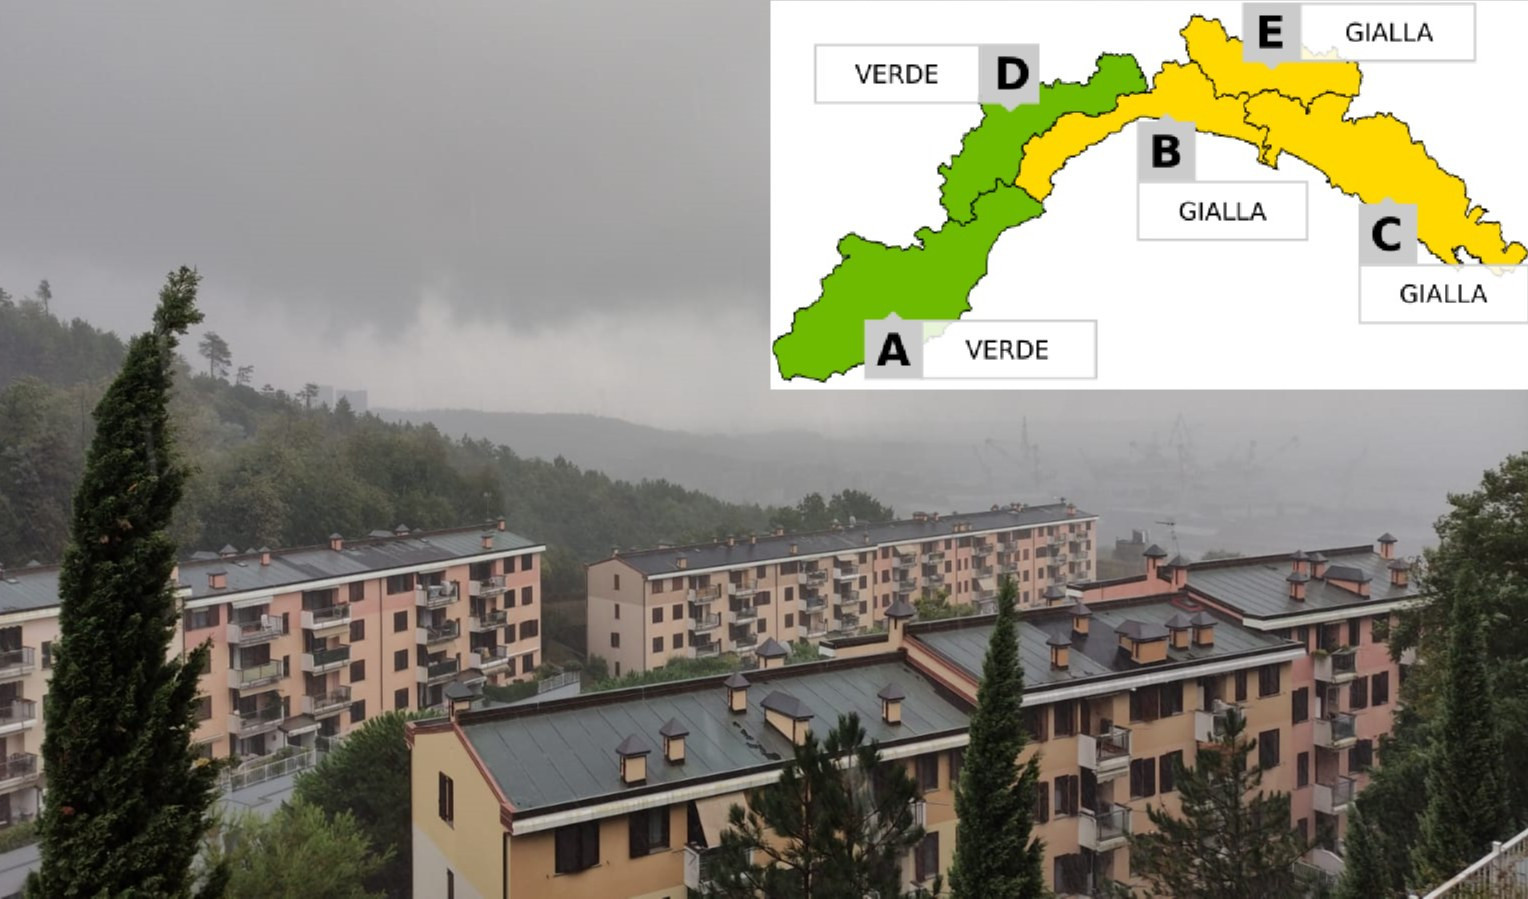 Maltempo in Liguria, prolungata l'allerta meteo gialla sul centro-Levante